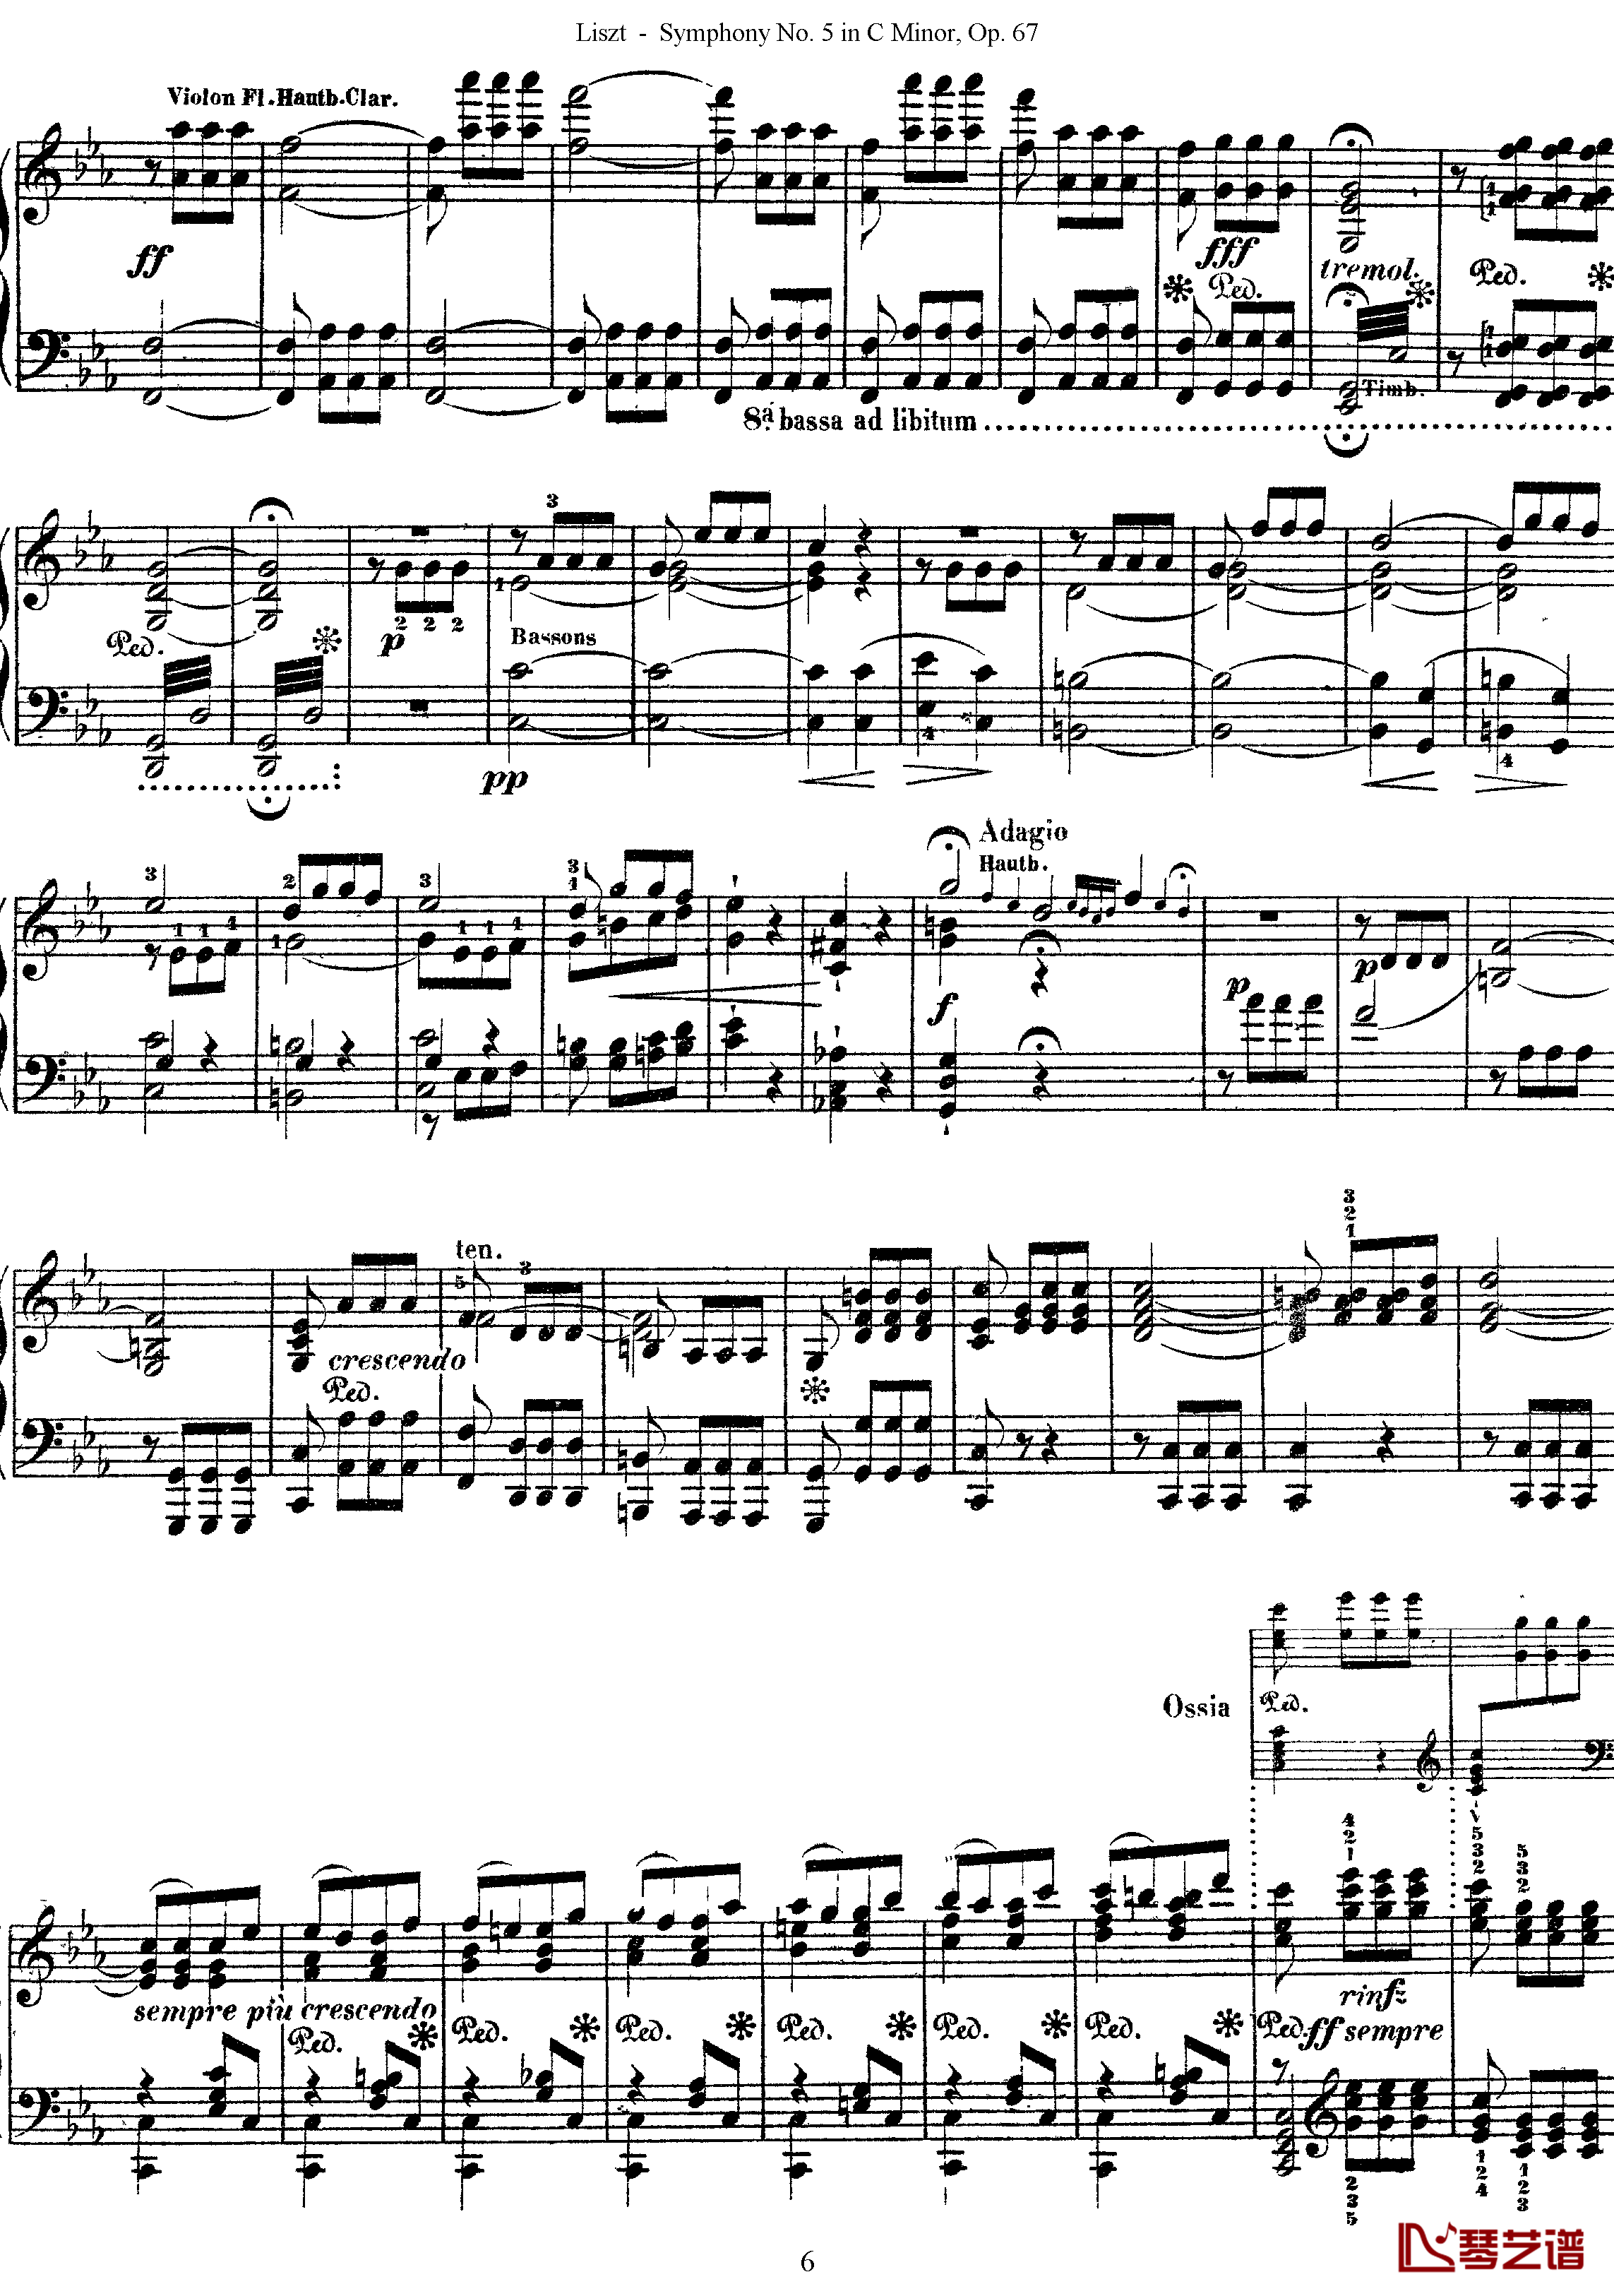 第五交响乐的钢琴曲钢琴谱-李斯特-李斯特改编自贝多芬6